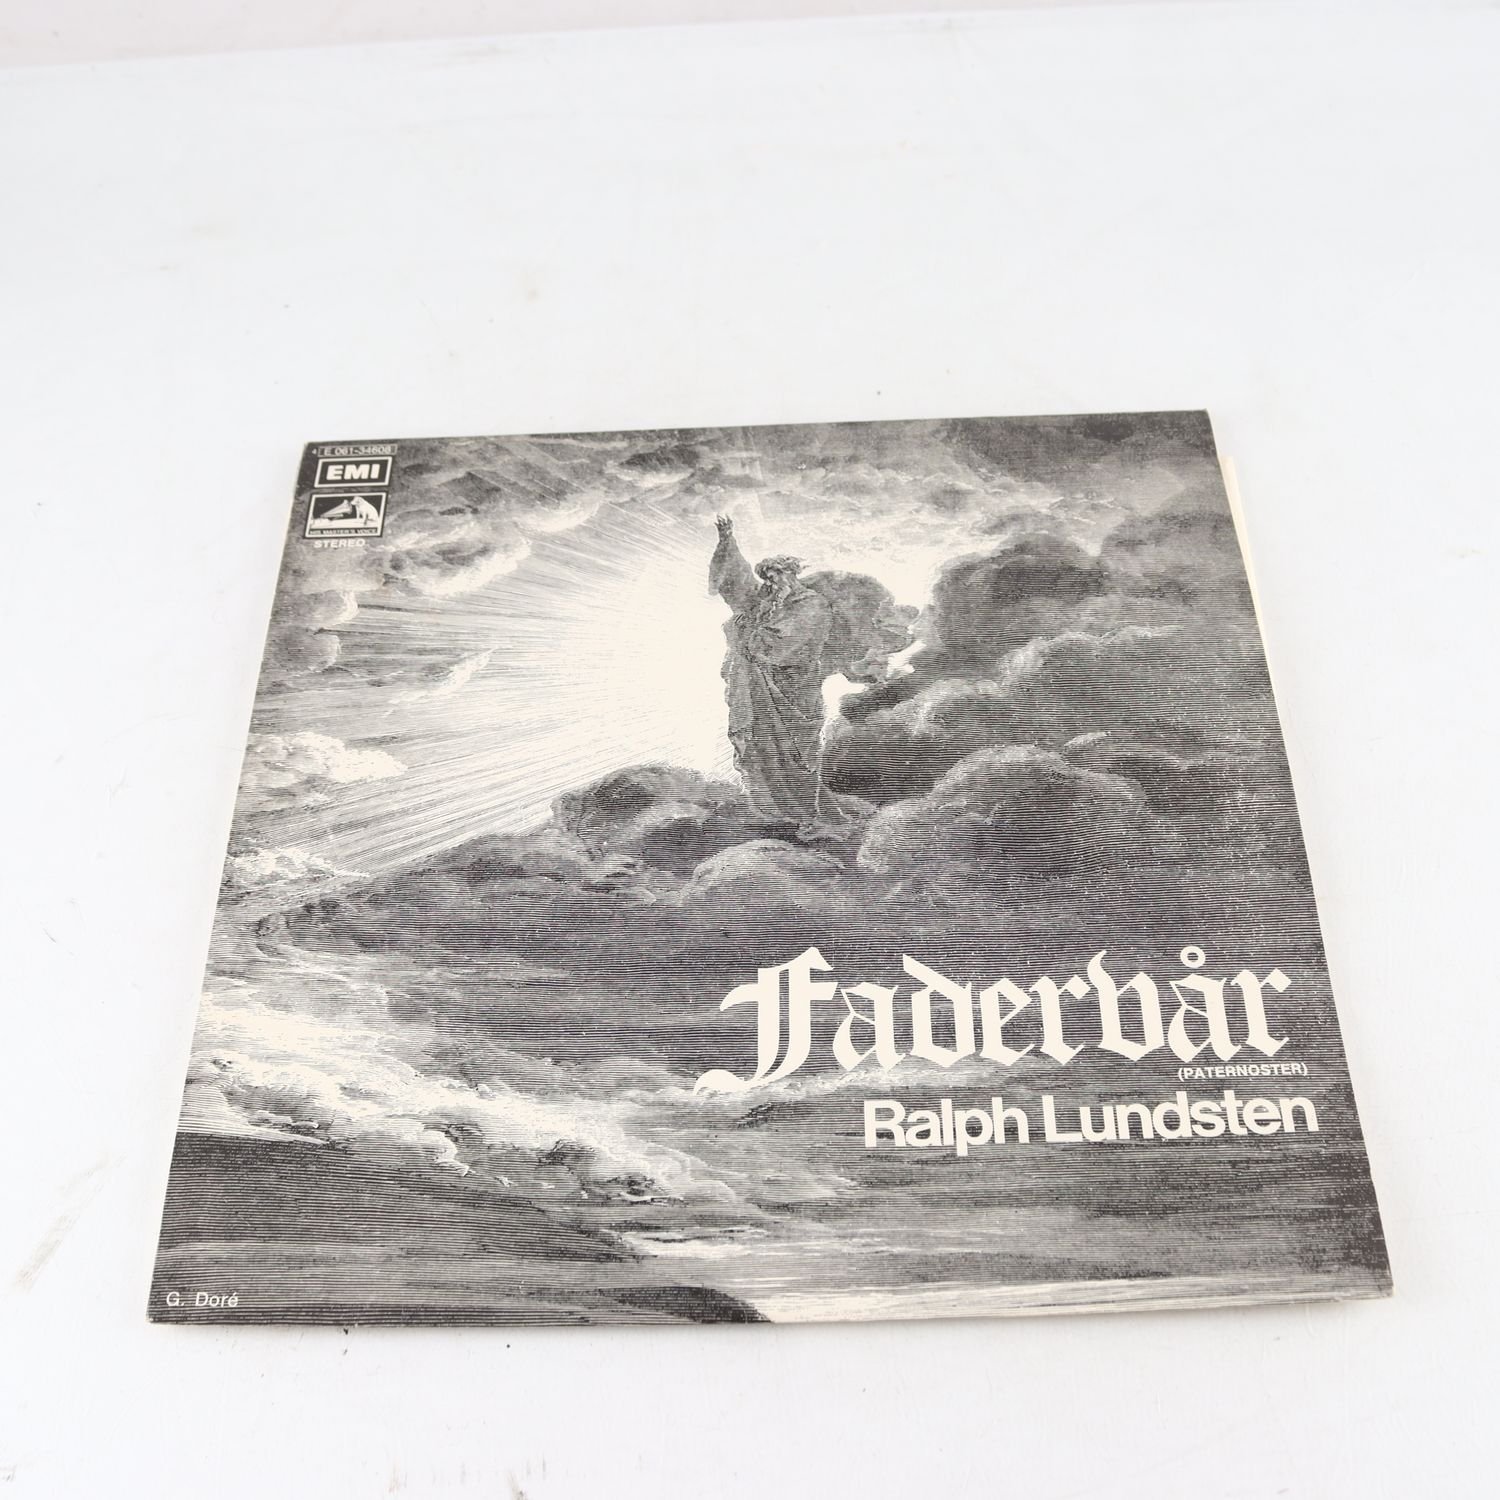 LP Ralph Lundsten, Fadervår (Paternoster), signerad